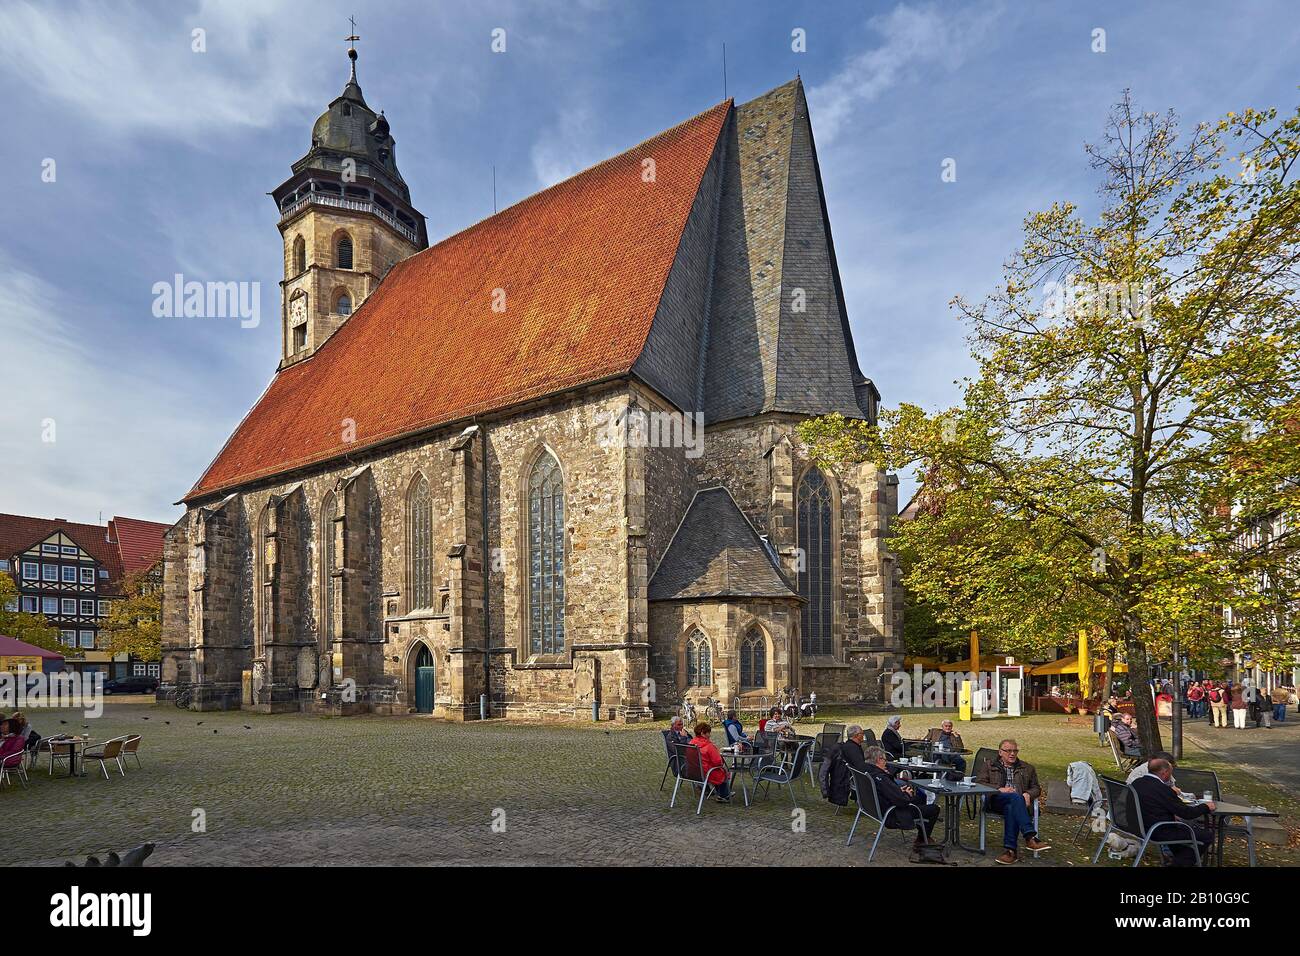 Blasiuskirche à la place de l'église dans la vieille ville, Hann. Münden, Basse-Saxe, Allemagne Banque D'Images